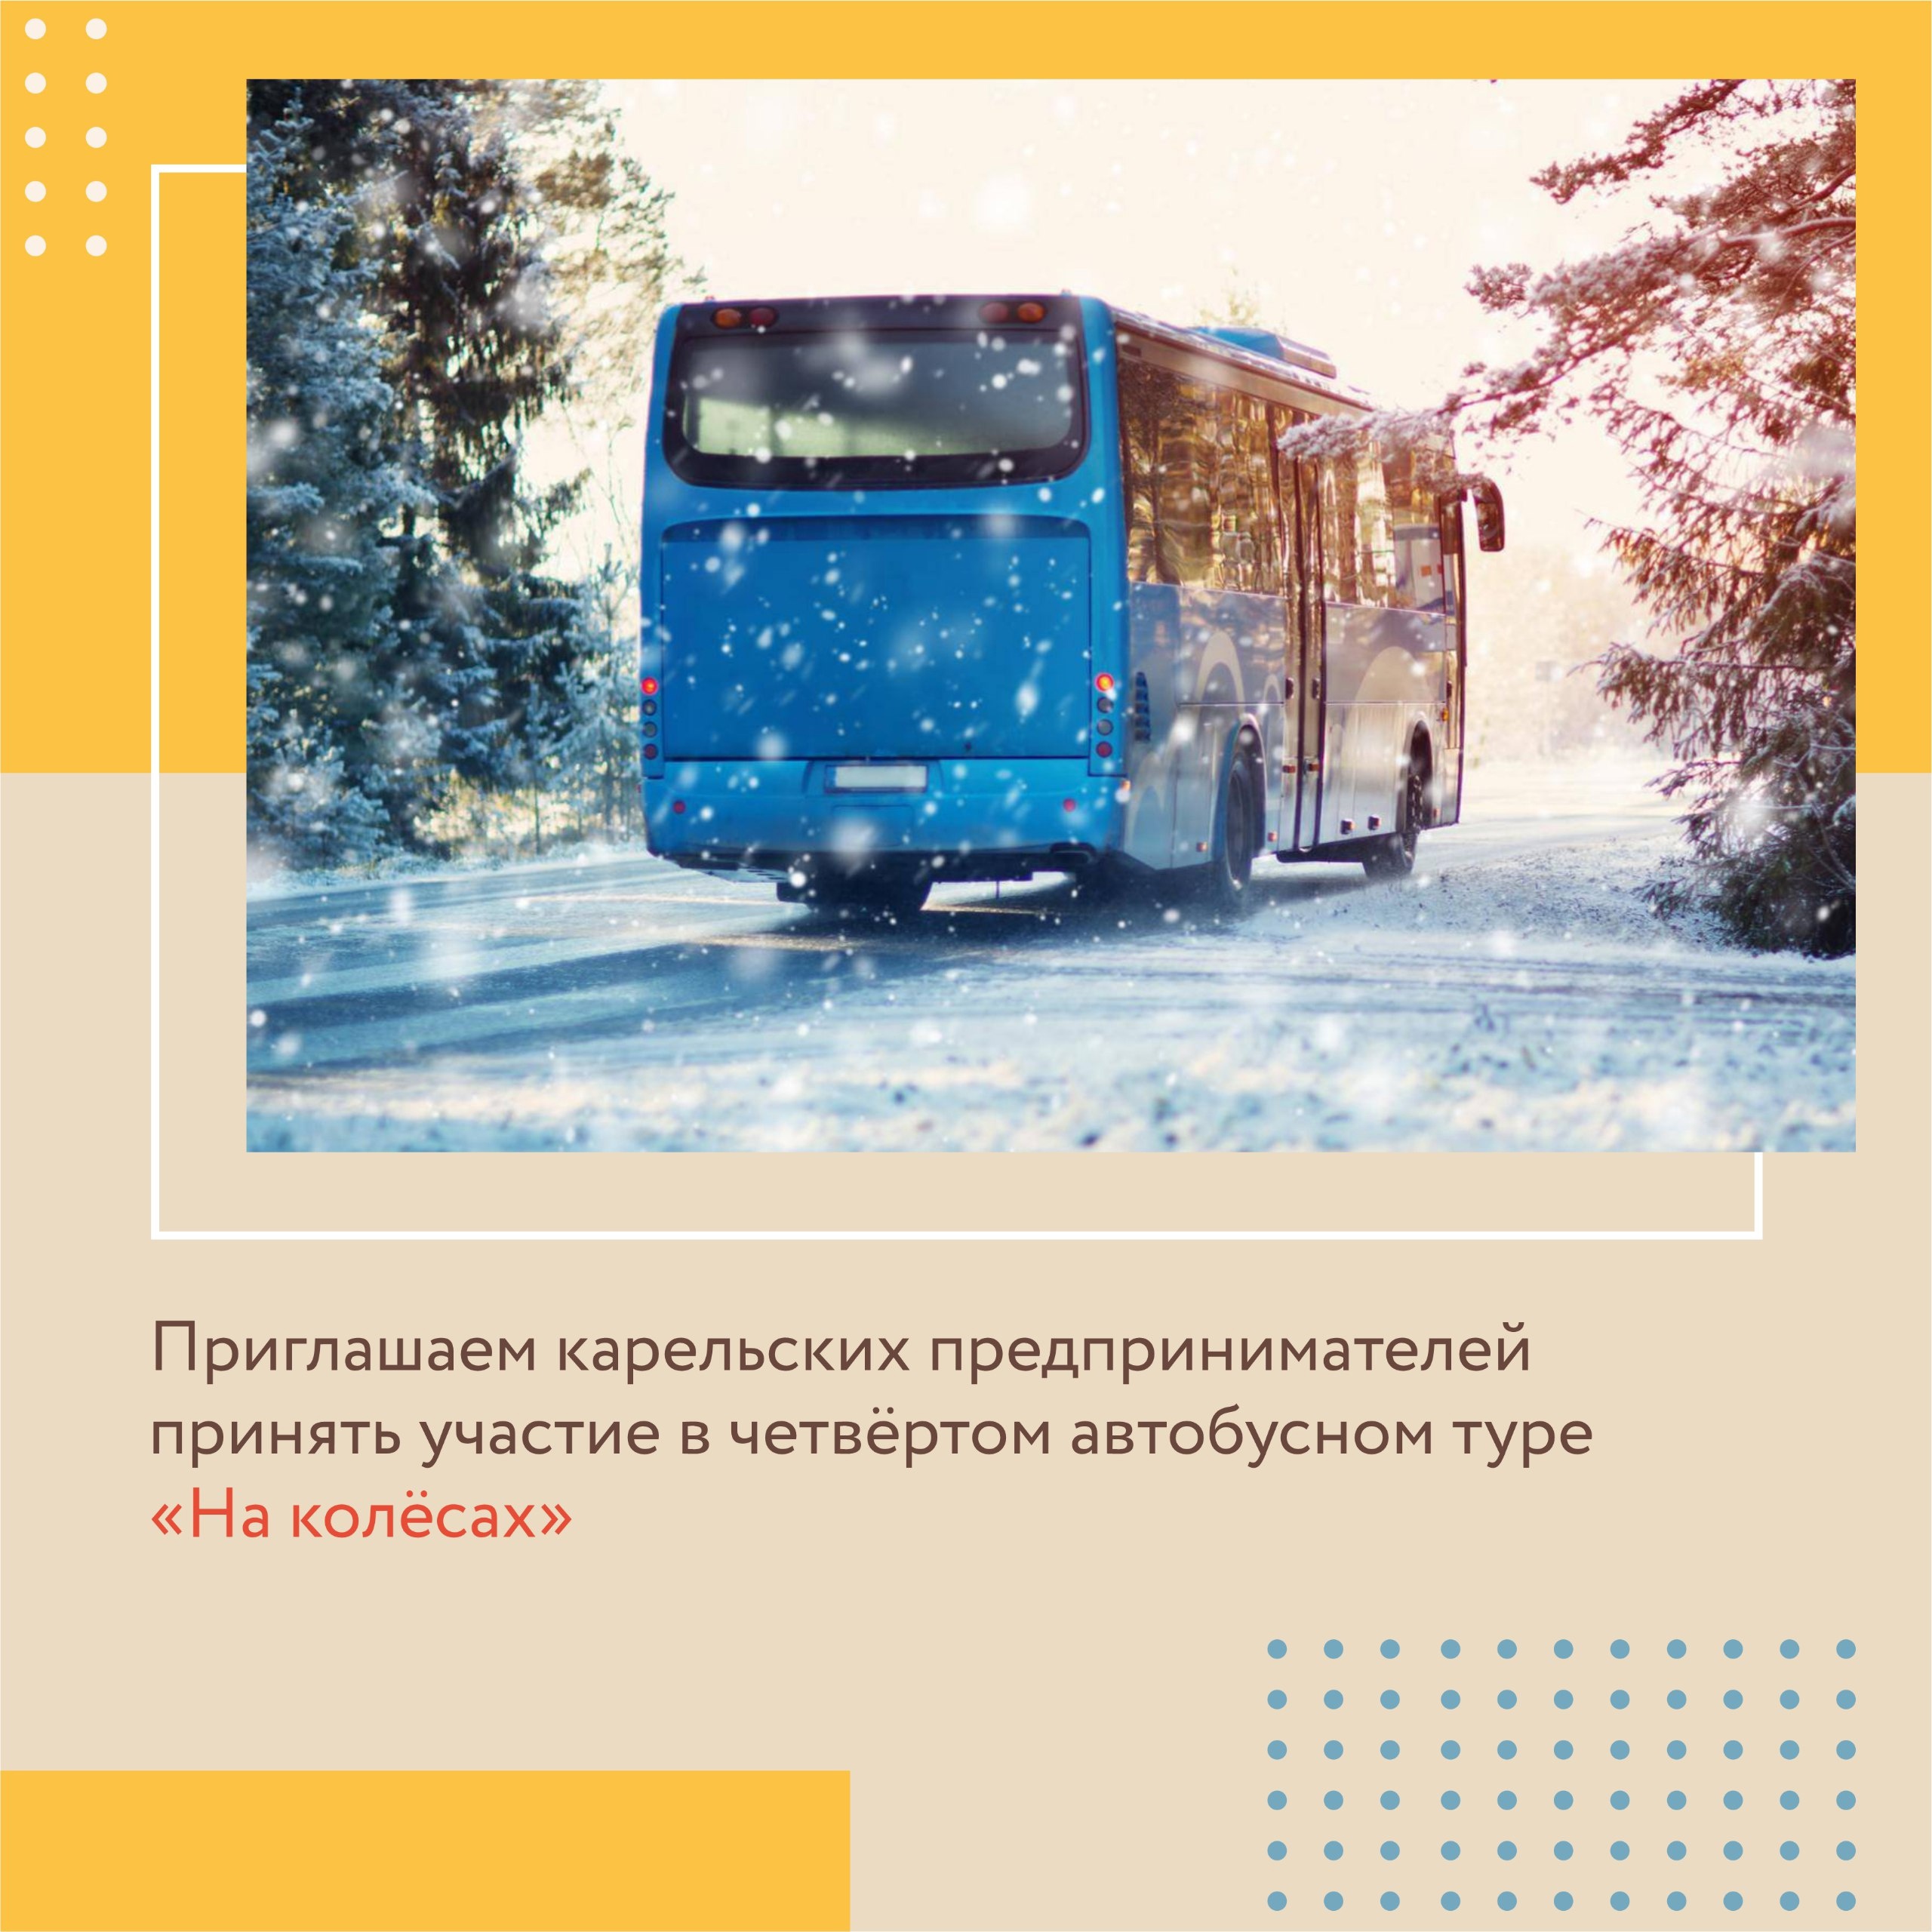 «На колесах»: бизнесменов Карелии приглашают в автобусный тур для знакомства друг с другом